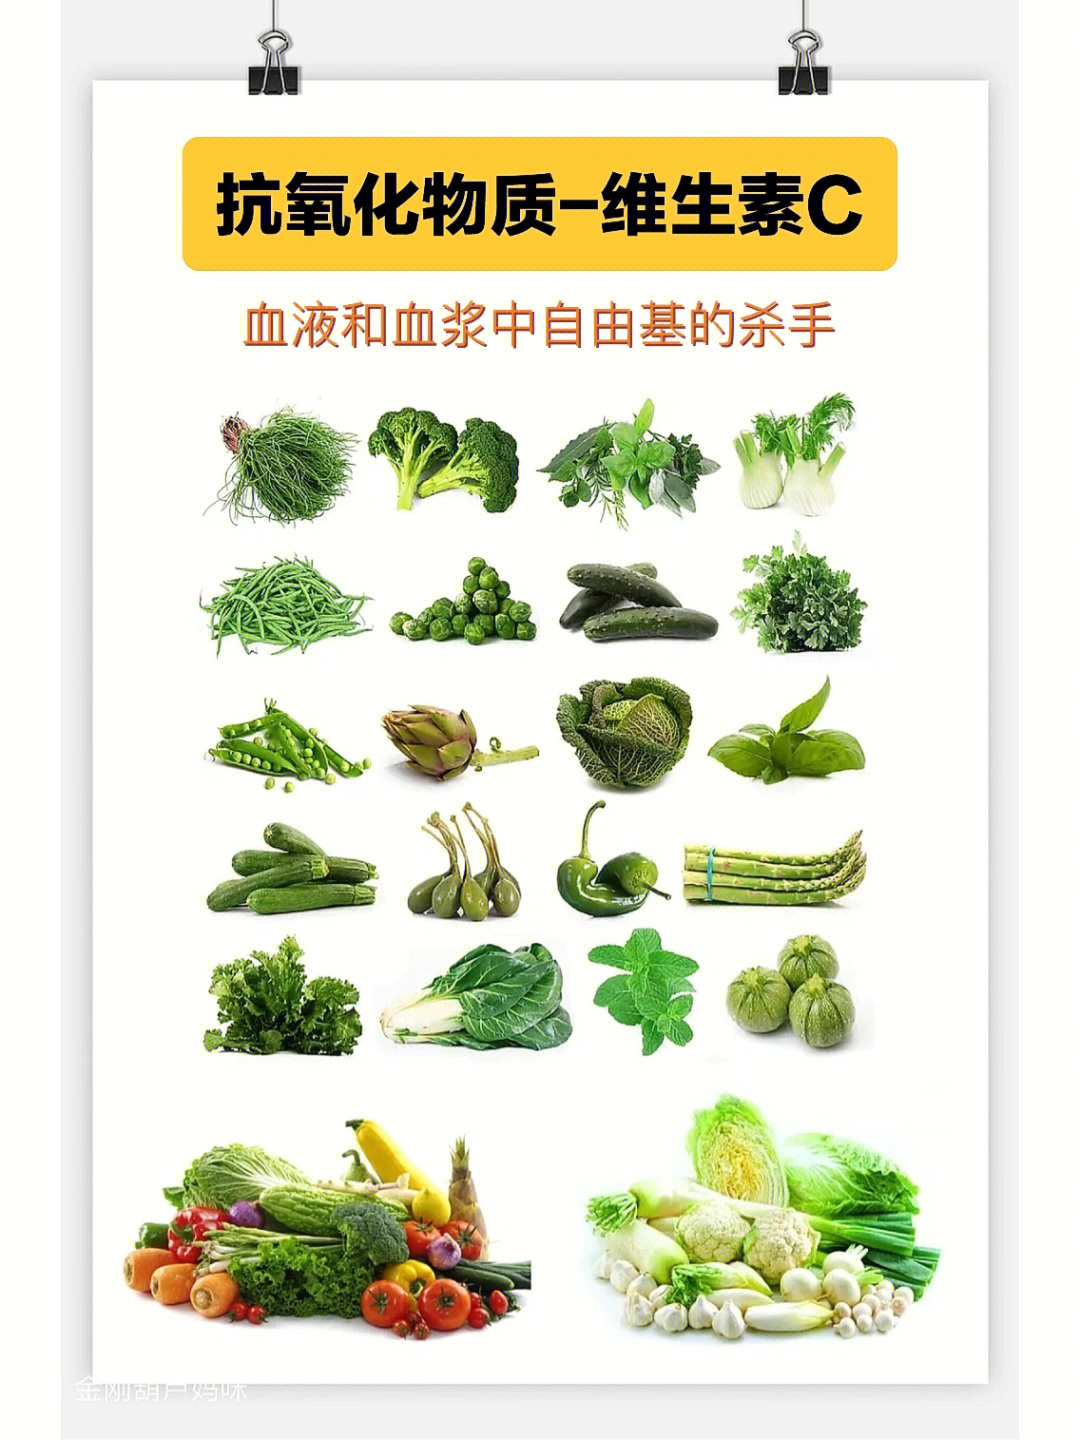 王涛博士基动牌营养素图片